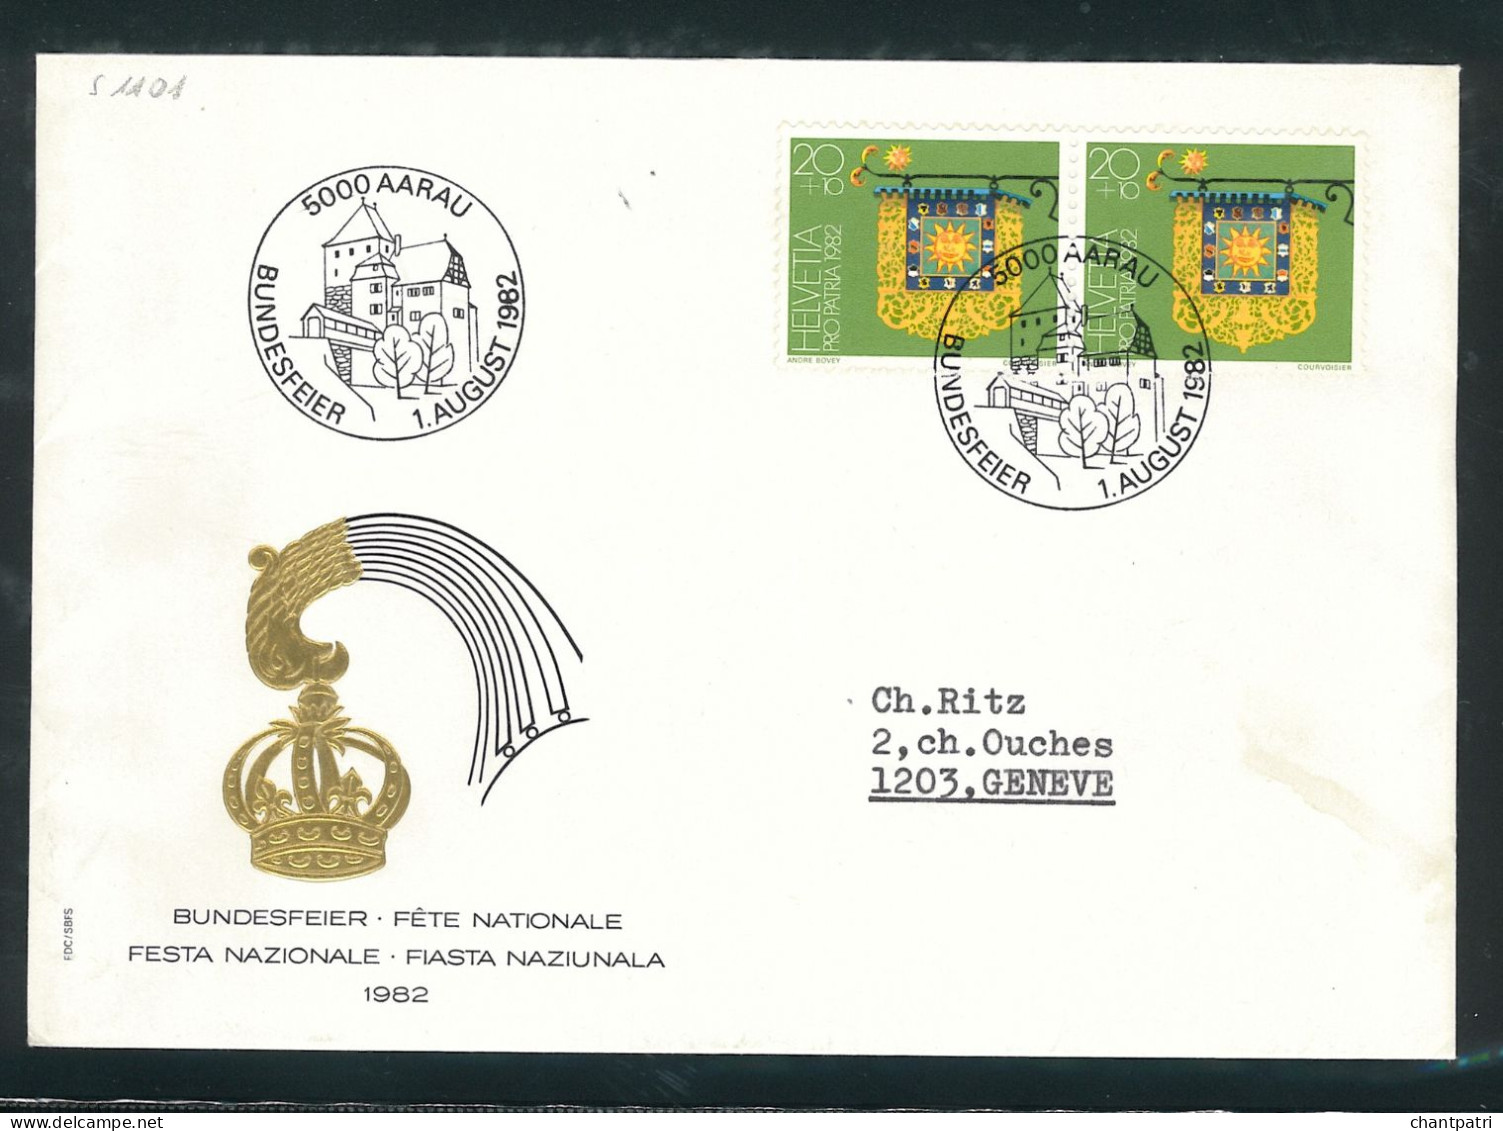 Bundesfeier 1982 - Fête Nationale - 5000 Aarau - 01 08 1982 - Bundesfeier 001/34 - Covers & Documents